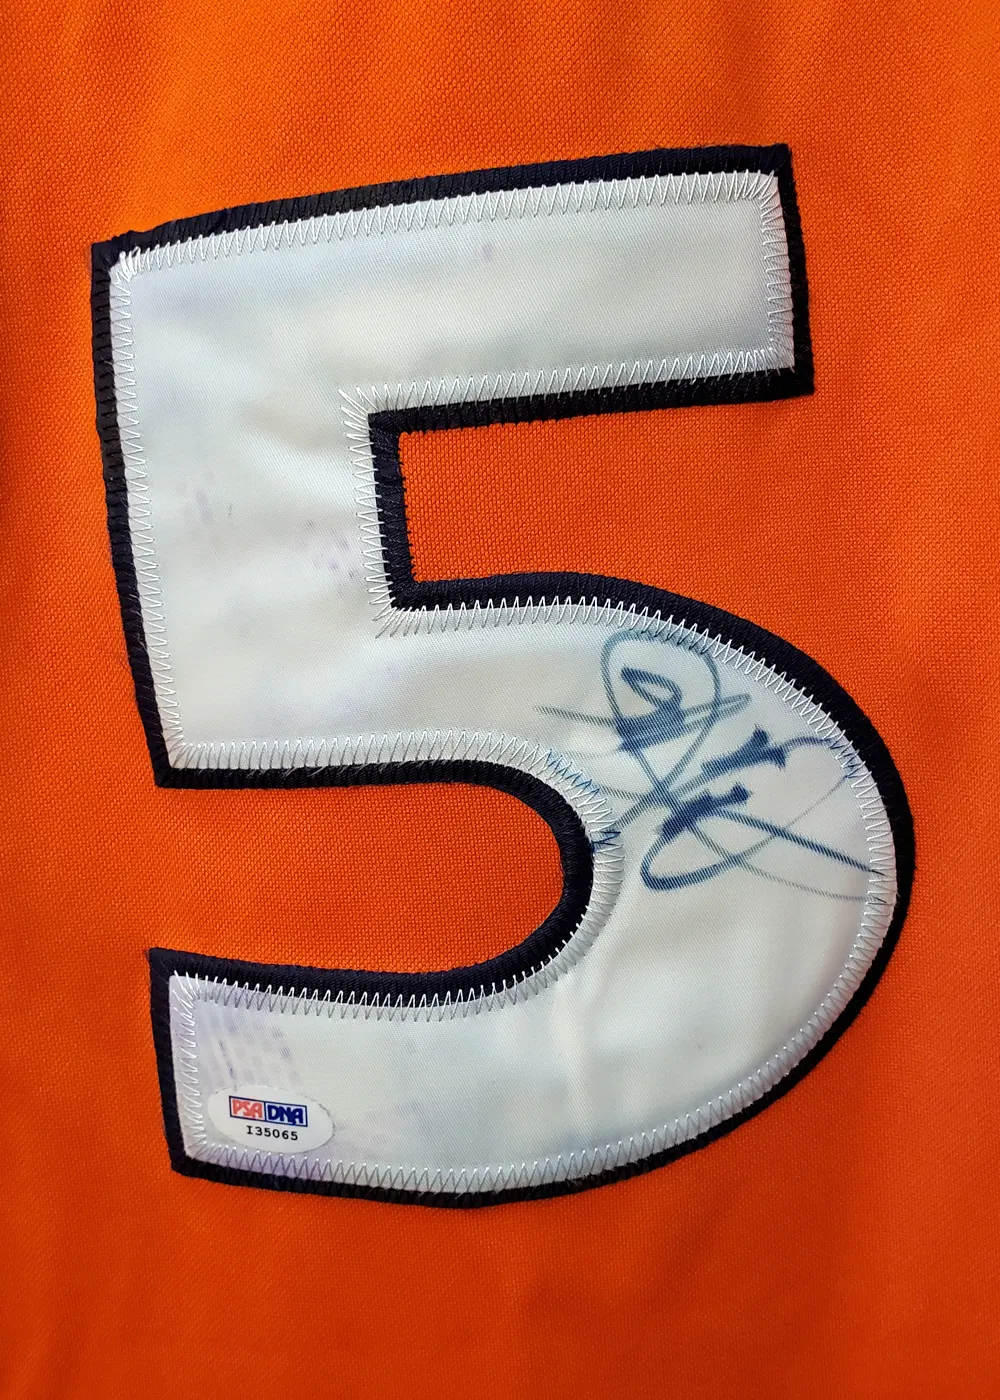 Carmelo Anthony Signed Syracuse Orange Jersey (Beckett COA)